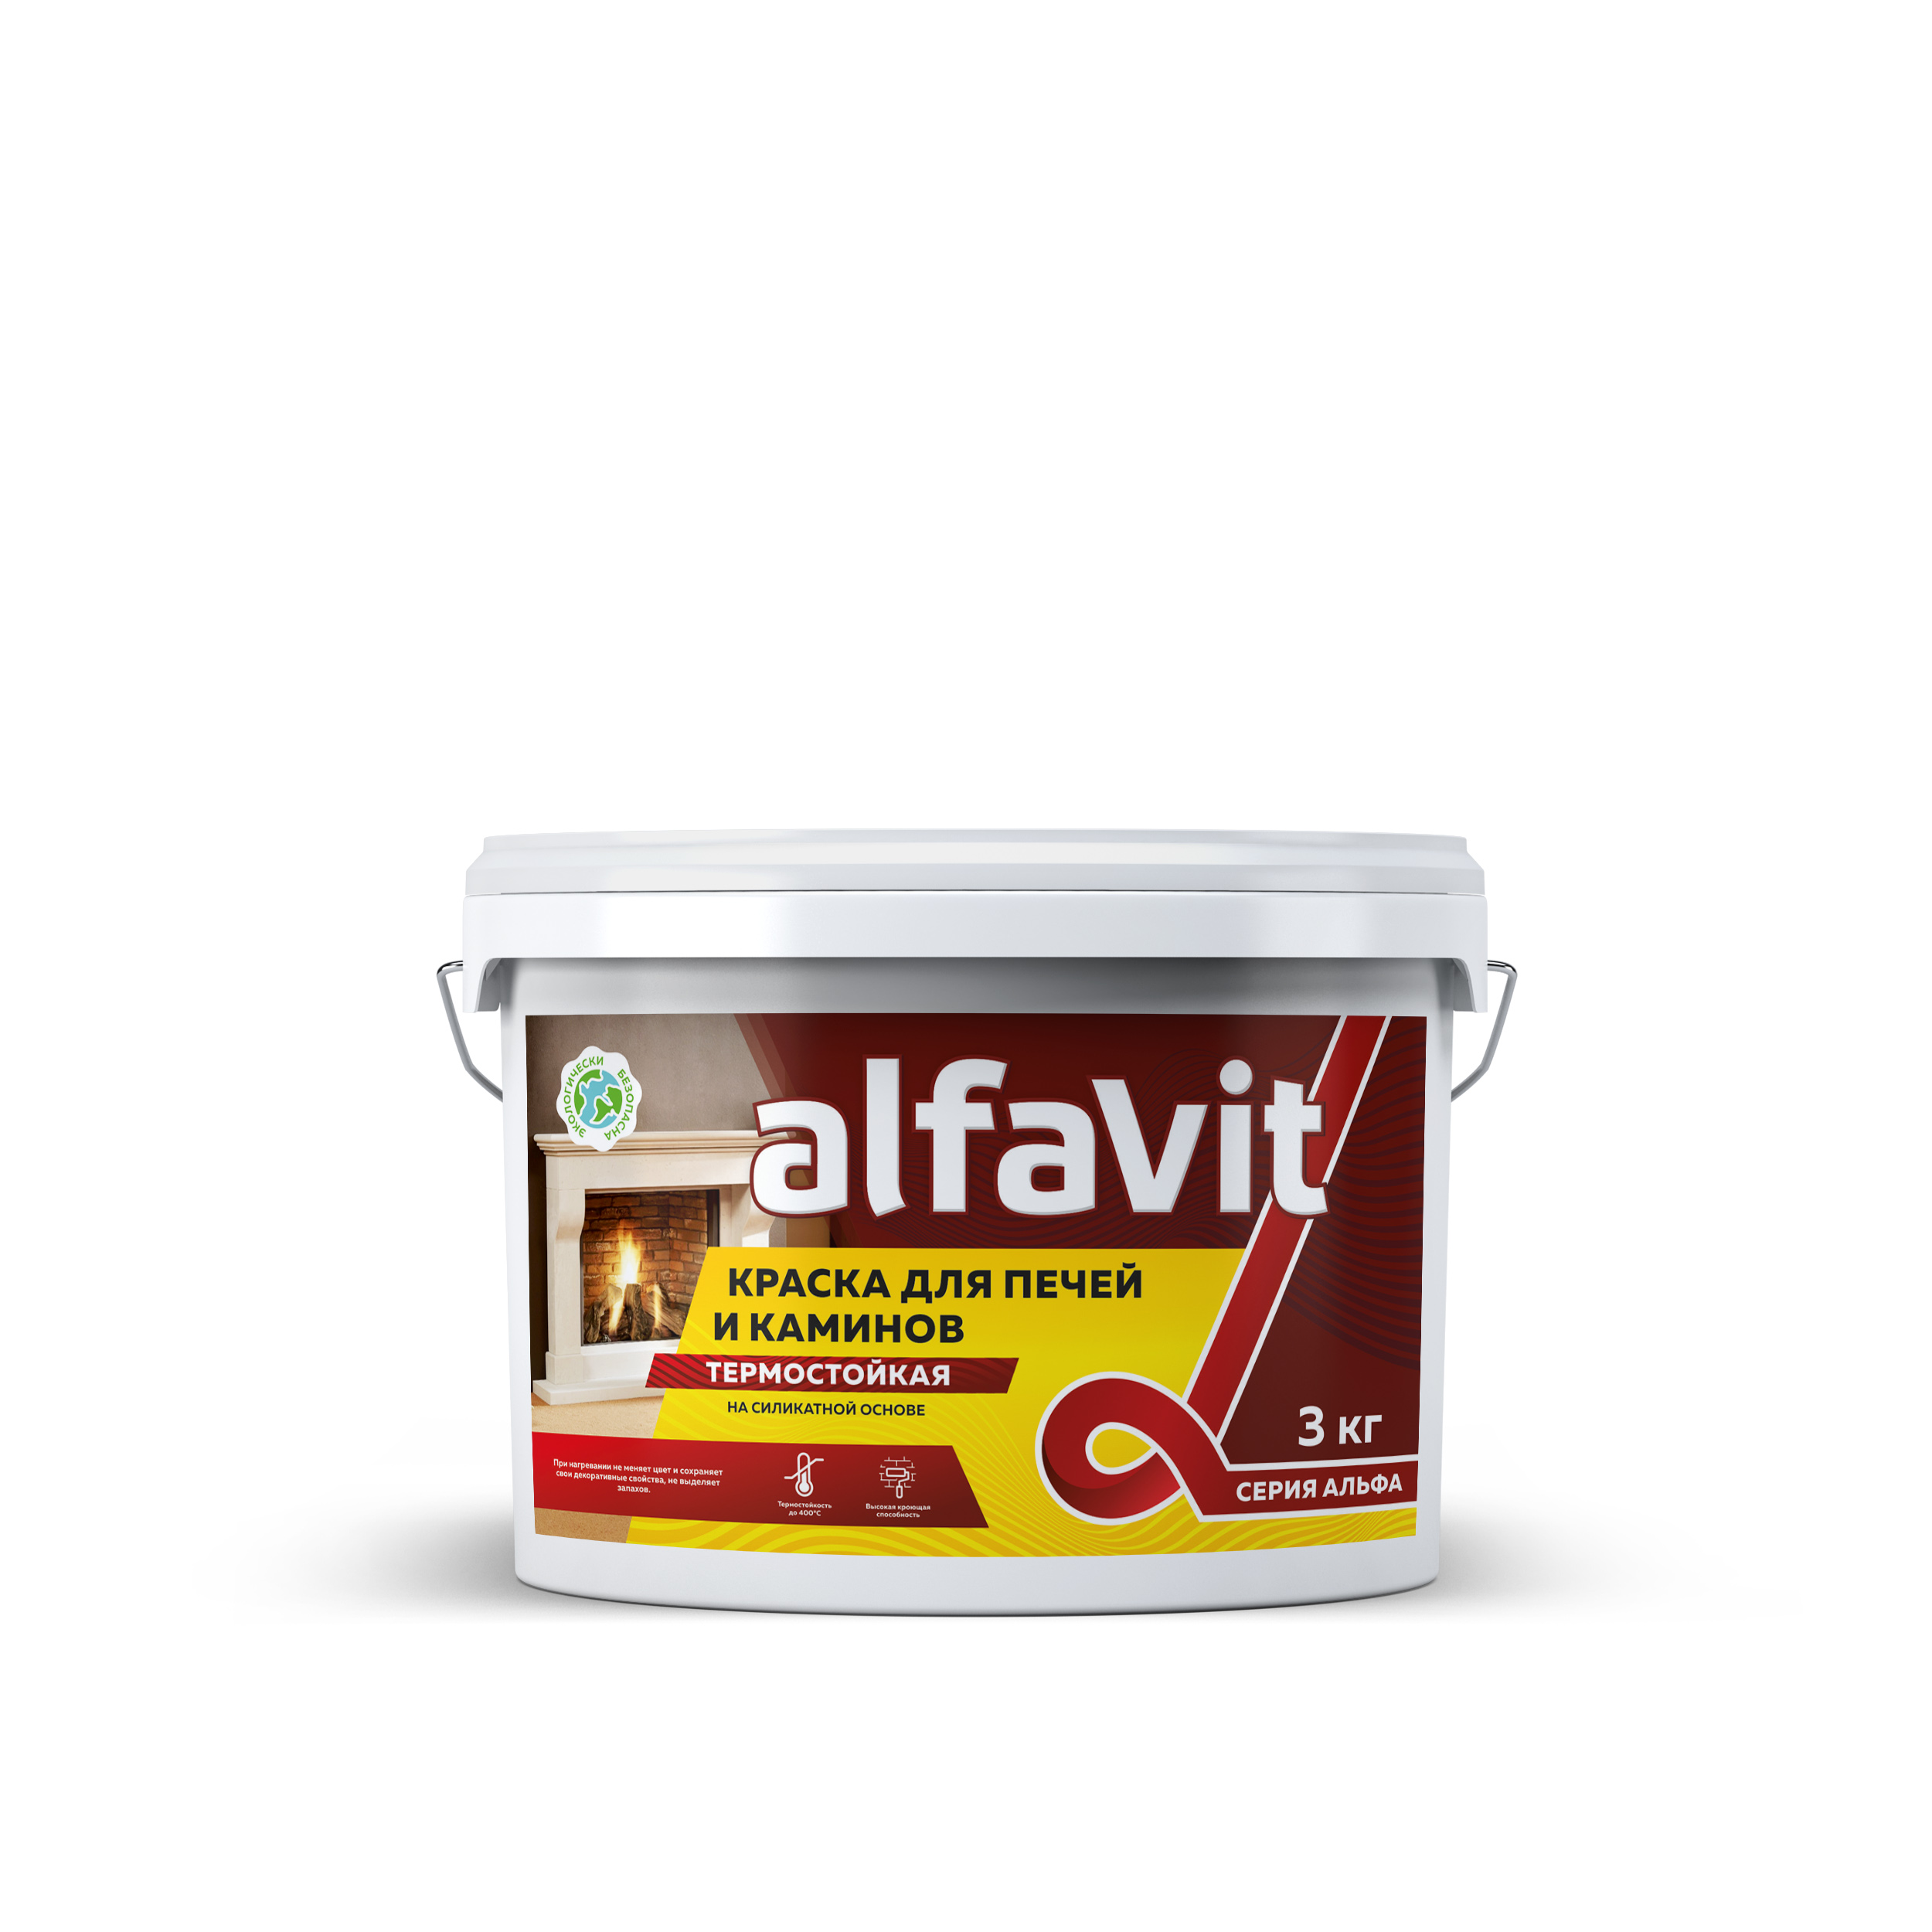 Краска для печей и каминов Alfavit серия Альфа, термостойкая, белая, 3 кг обмазка для печей и каминов krafor